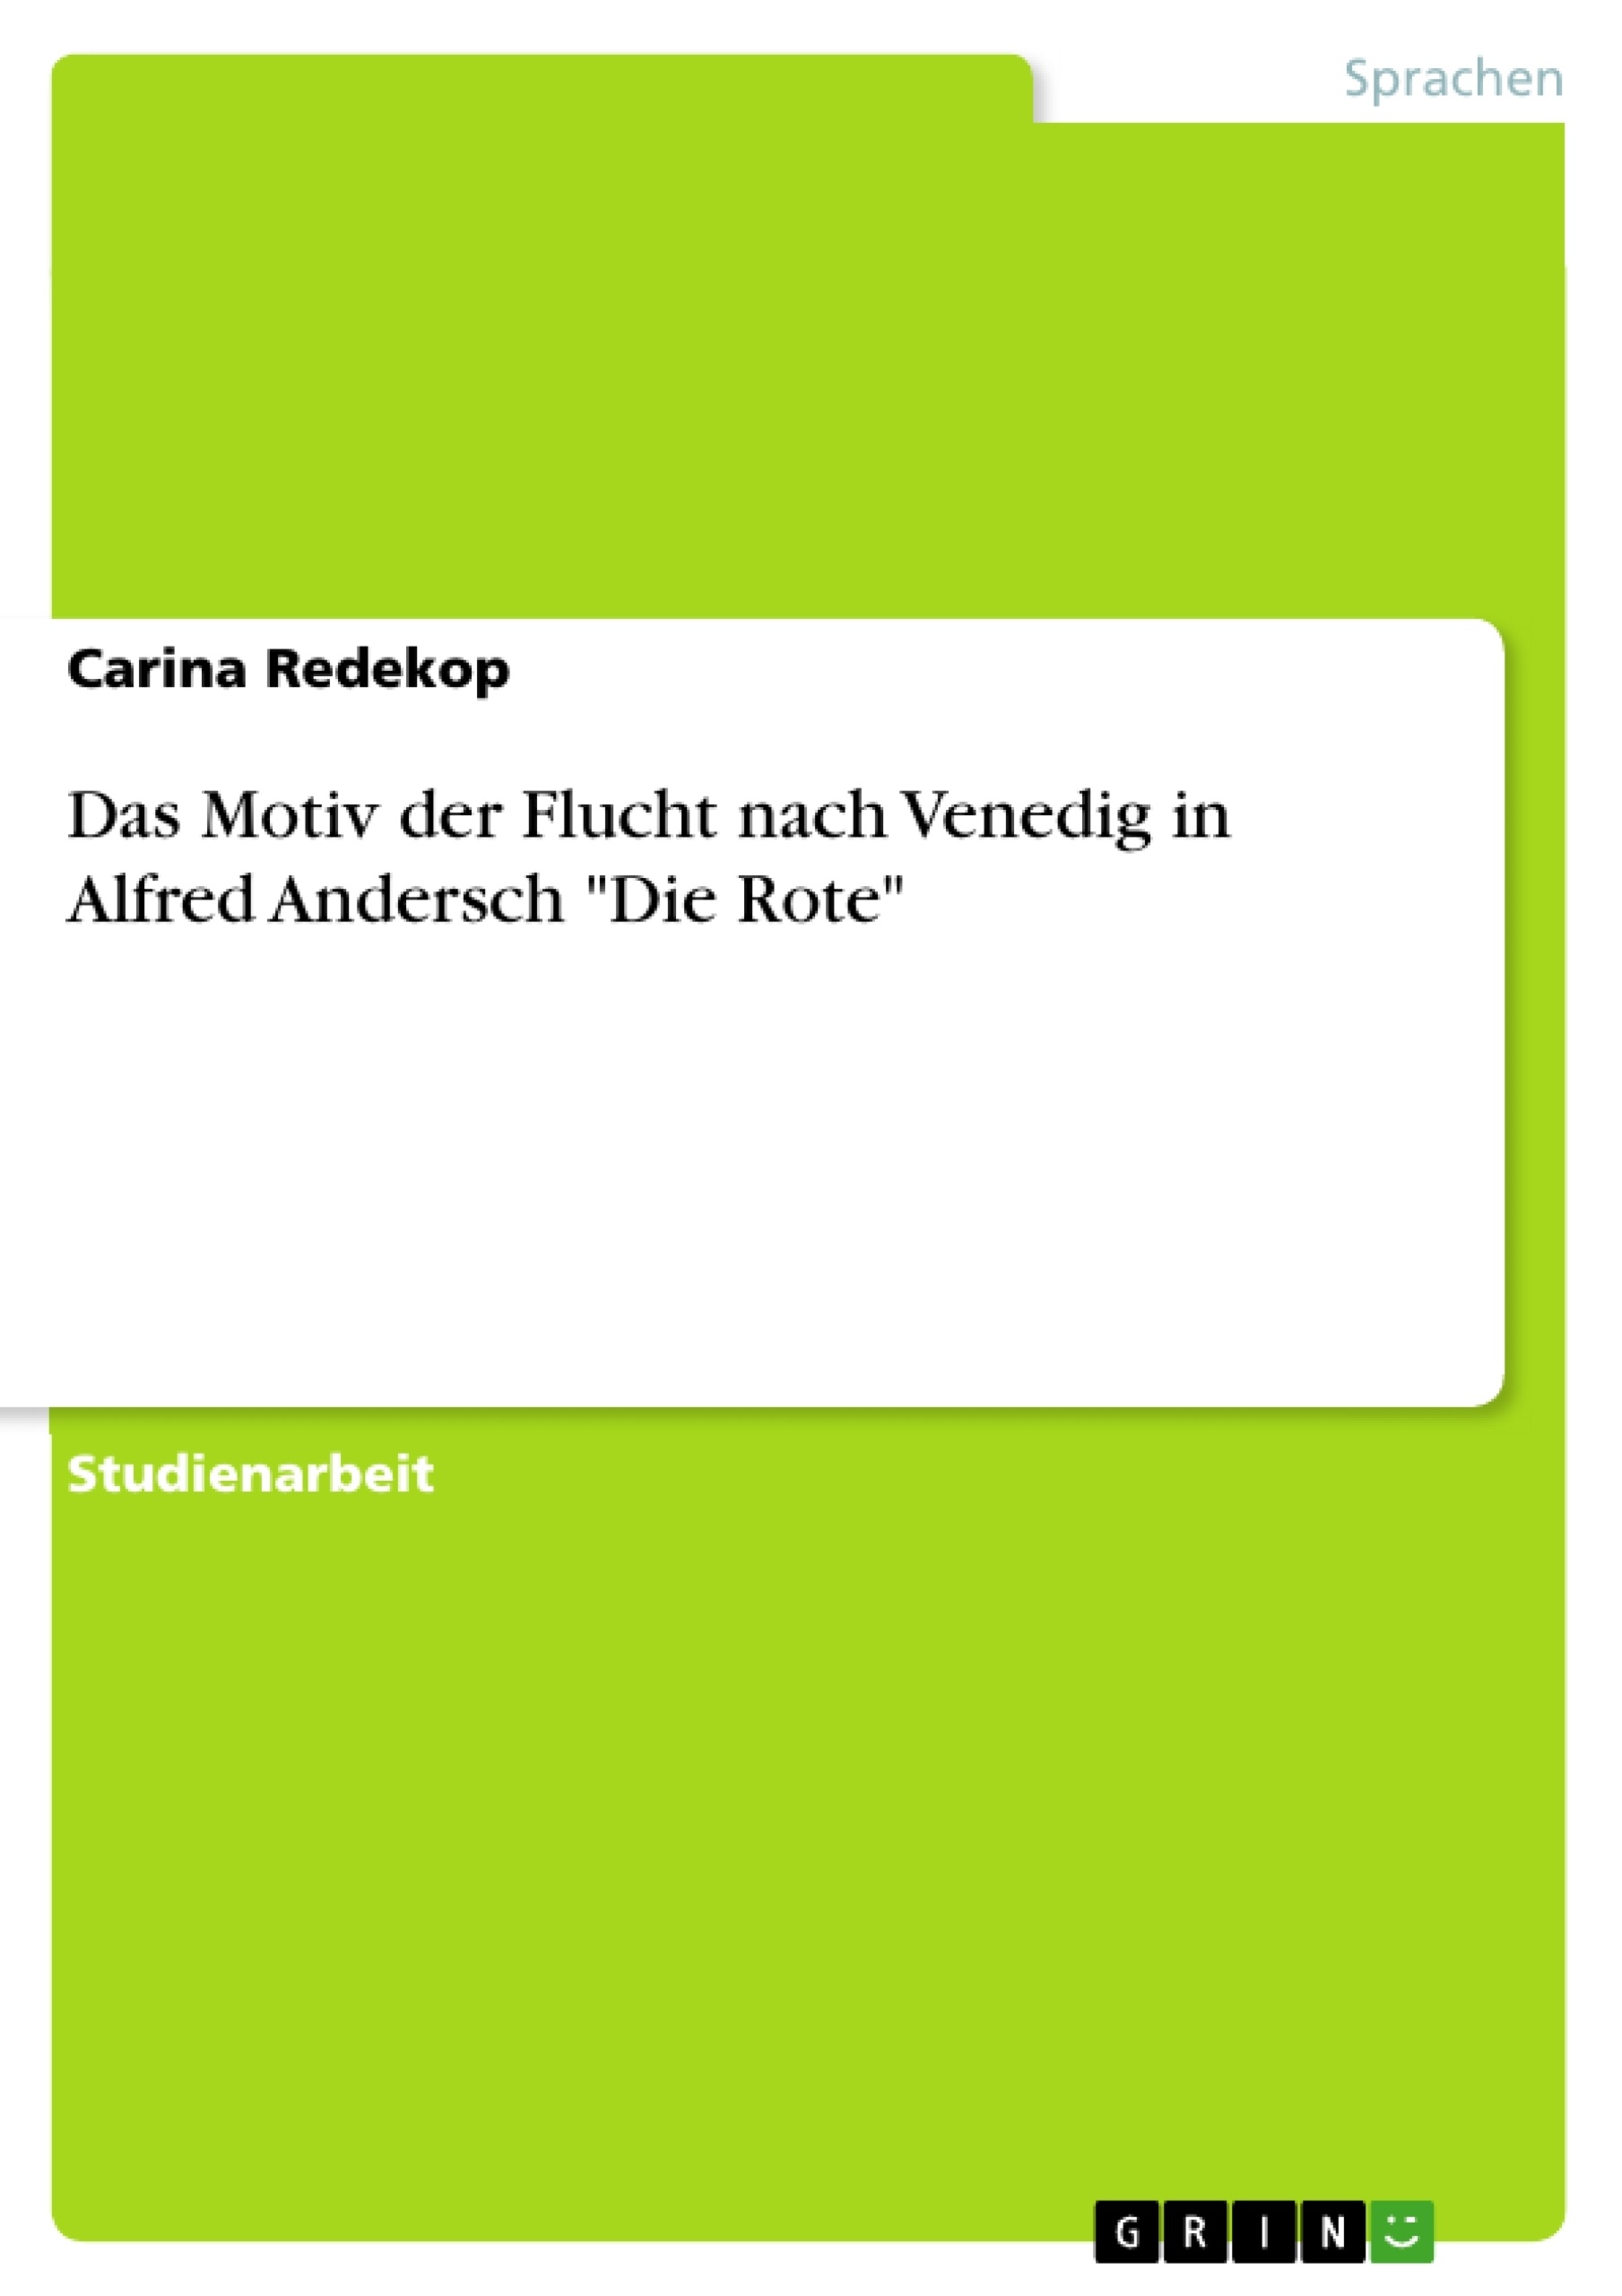 Título: Das Motiv der Flucht nach Venedig in Alfred Andersch "Die Rote"